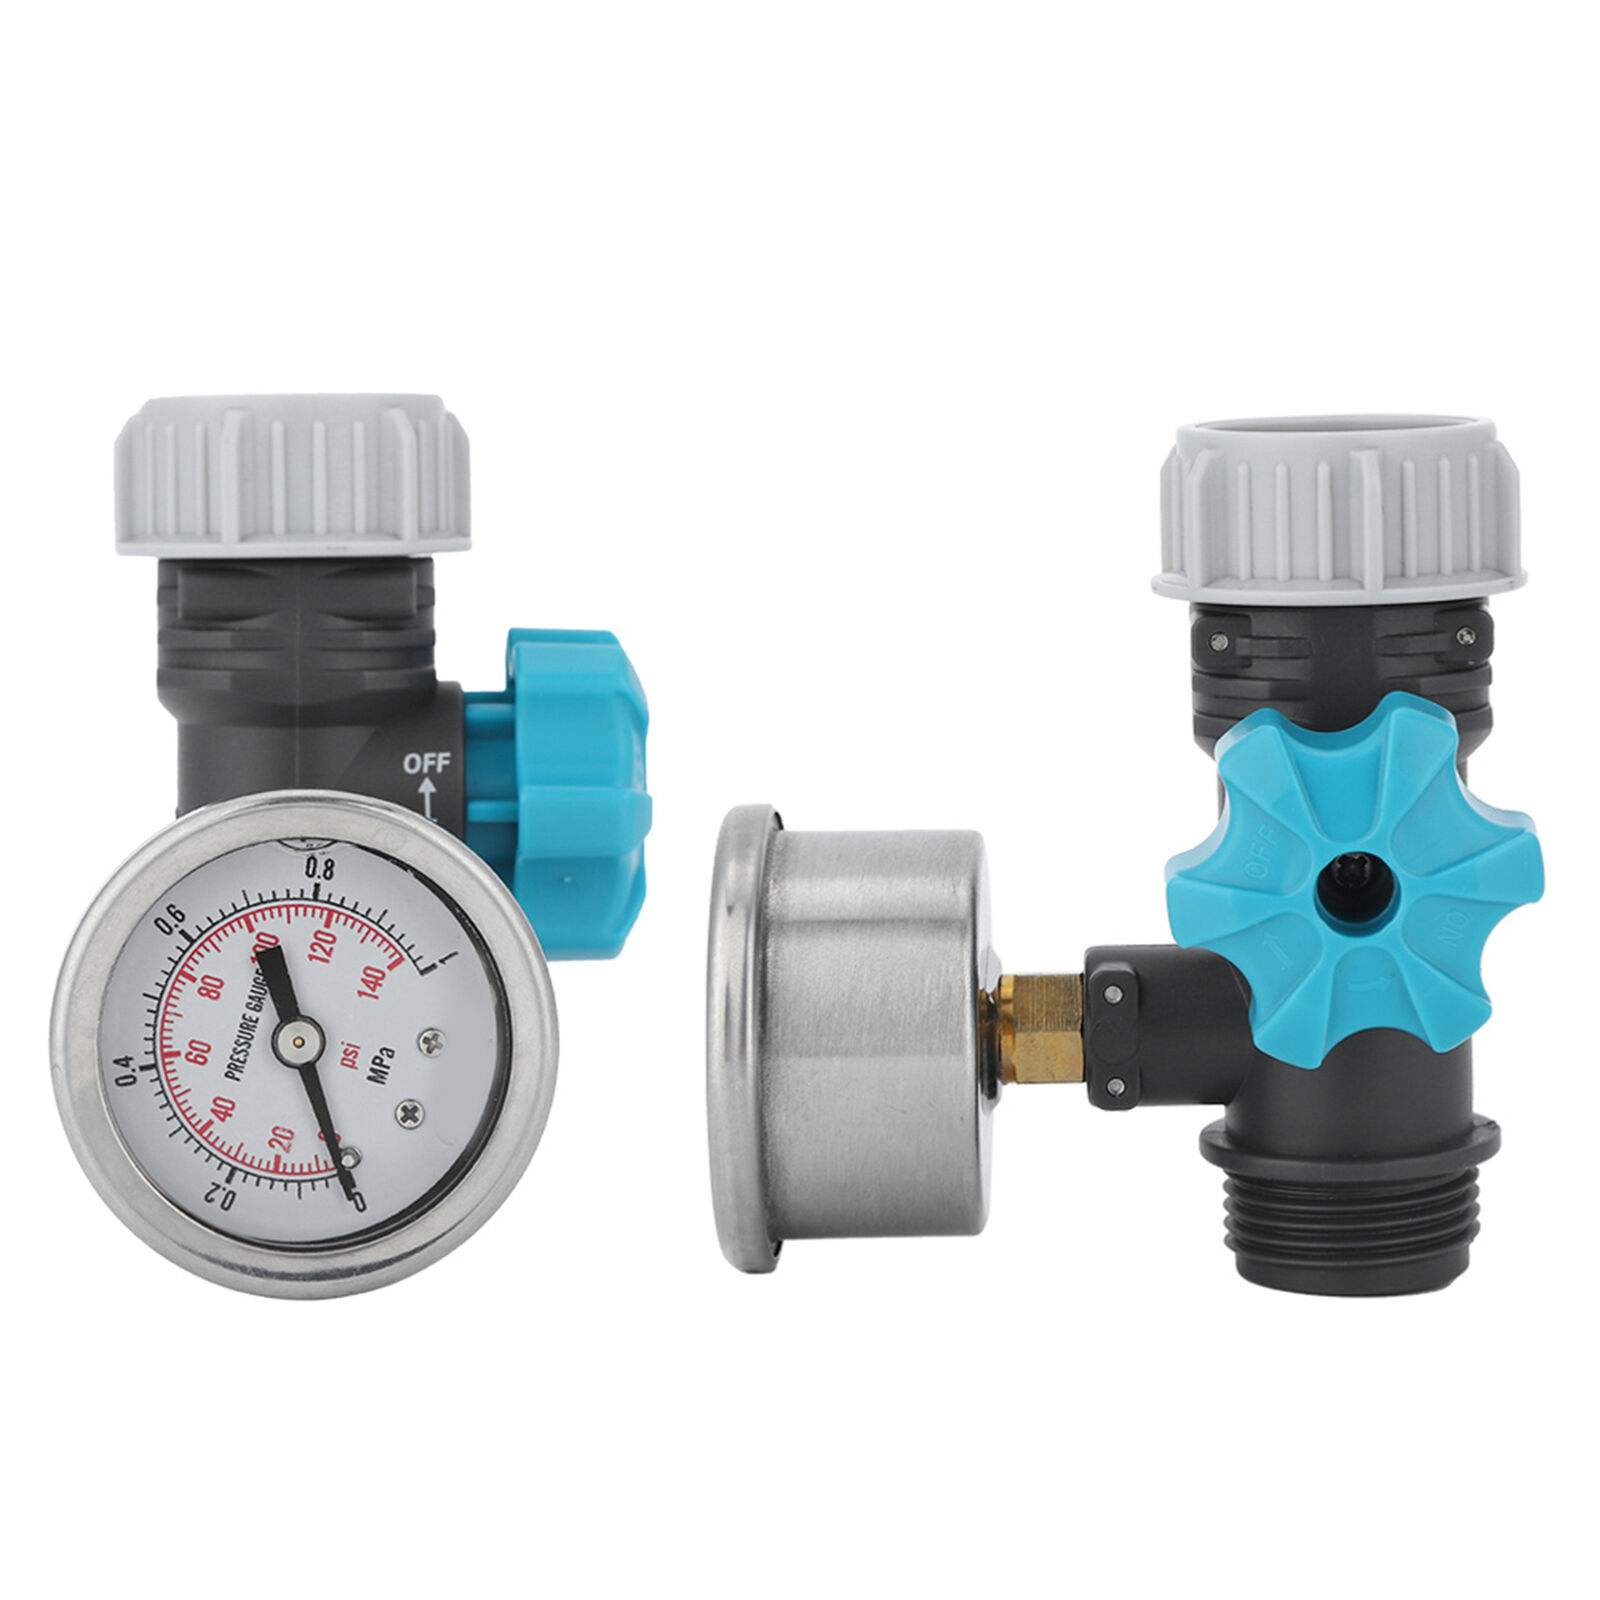 G3/4in Adjustable Water Pressure Regulator Valve With Pressure Gauge  Household | eBay